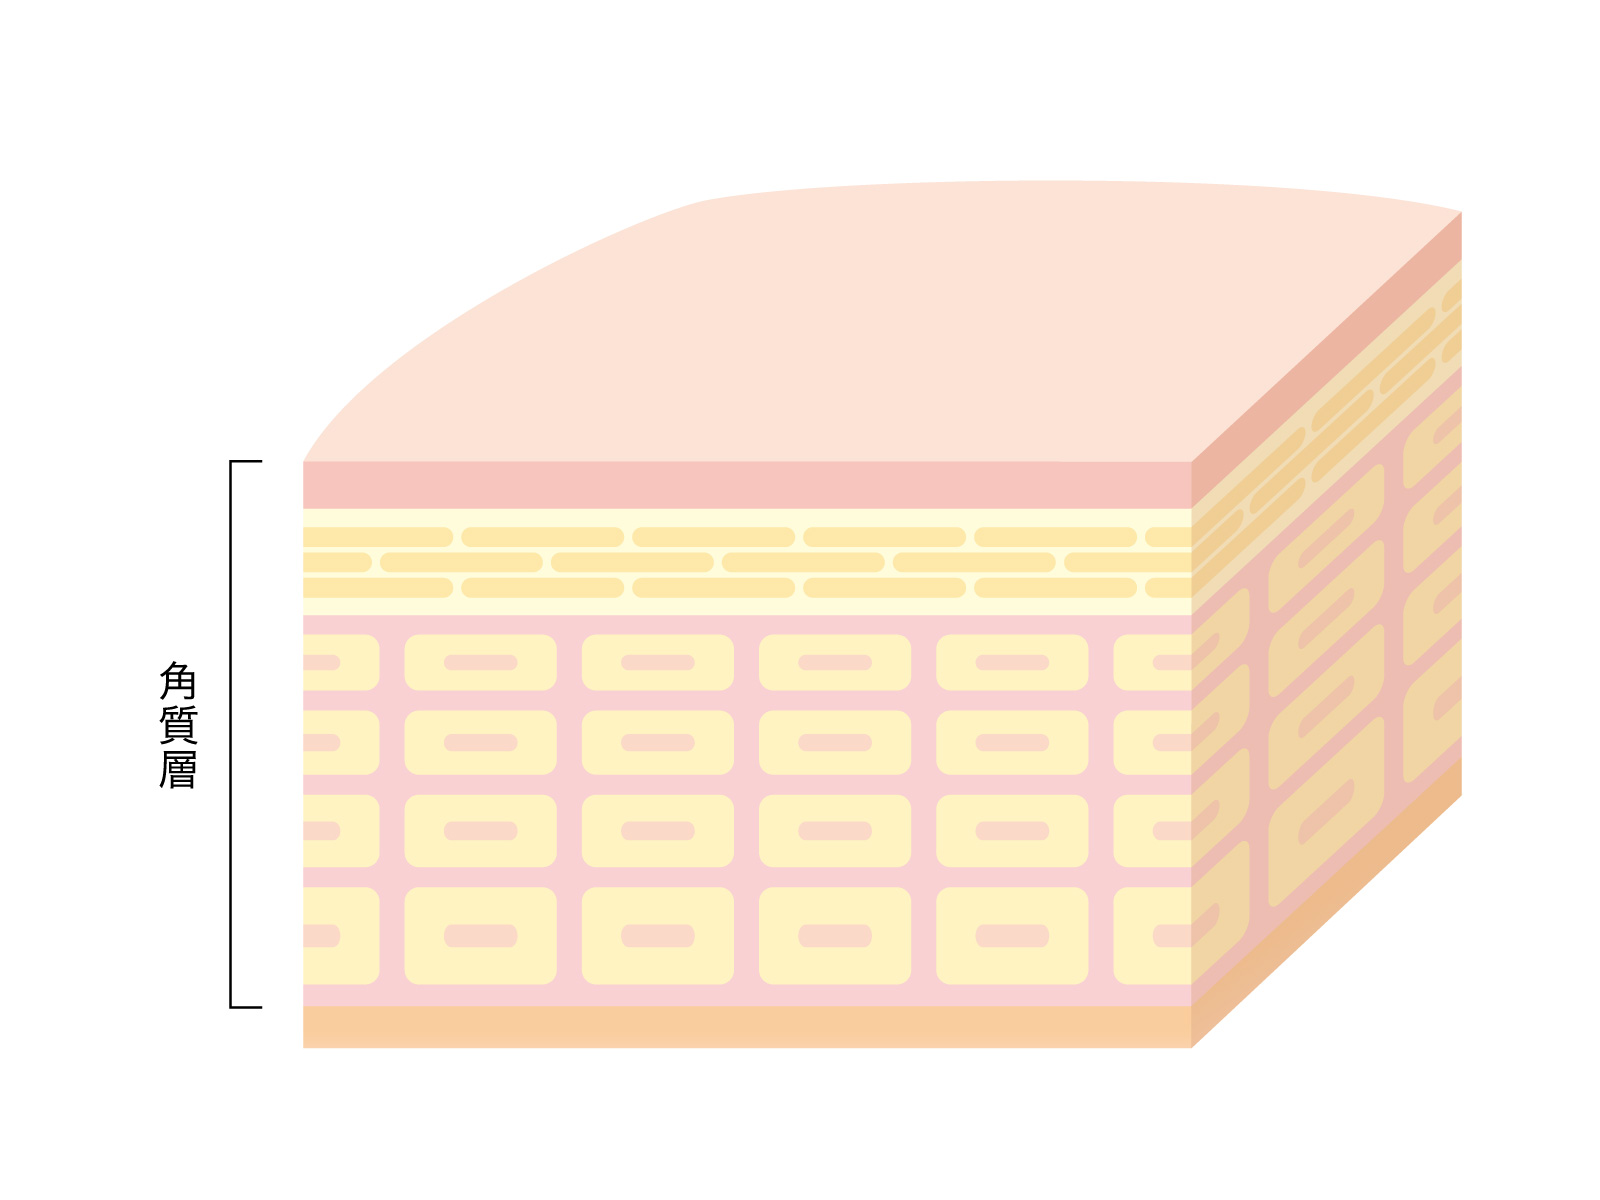 角質層は、わずか0.02mmの厚さの中に約10～20層の角層細胞が重なるようにしてできています